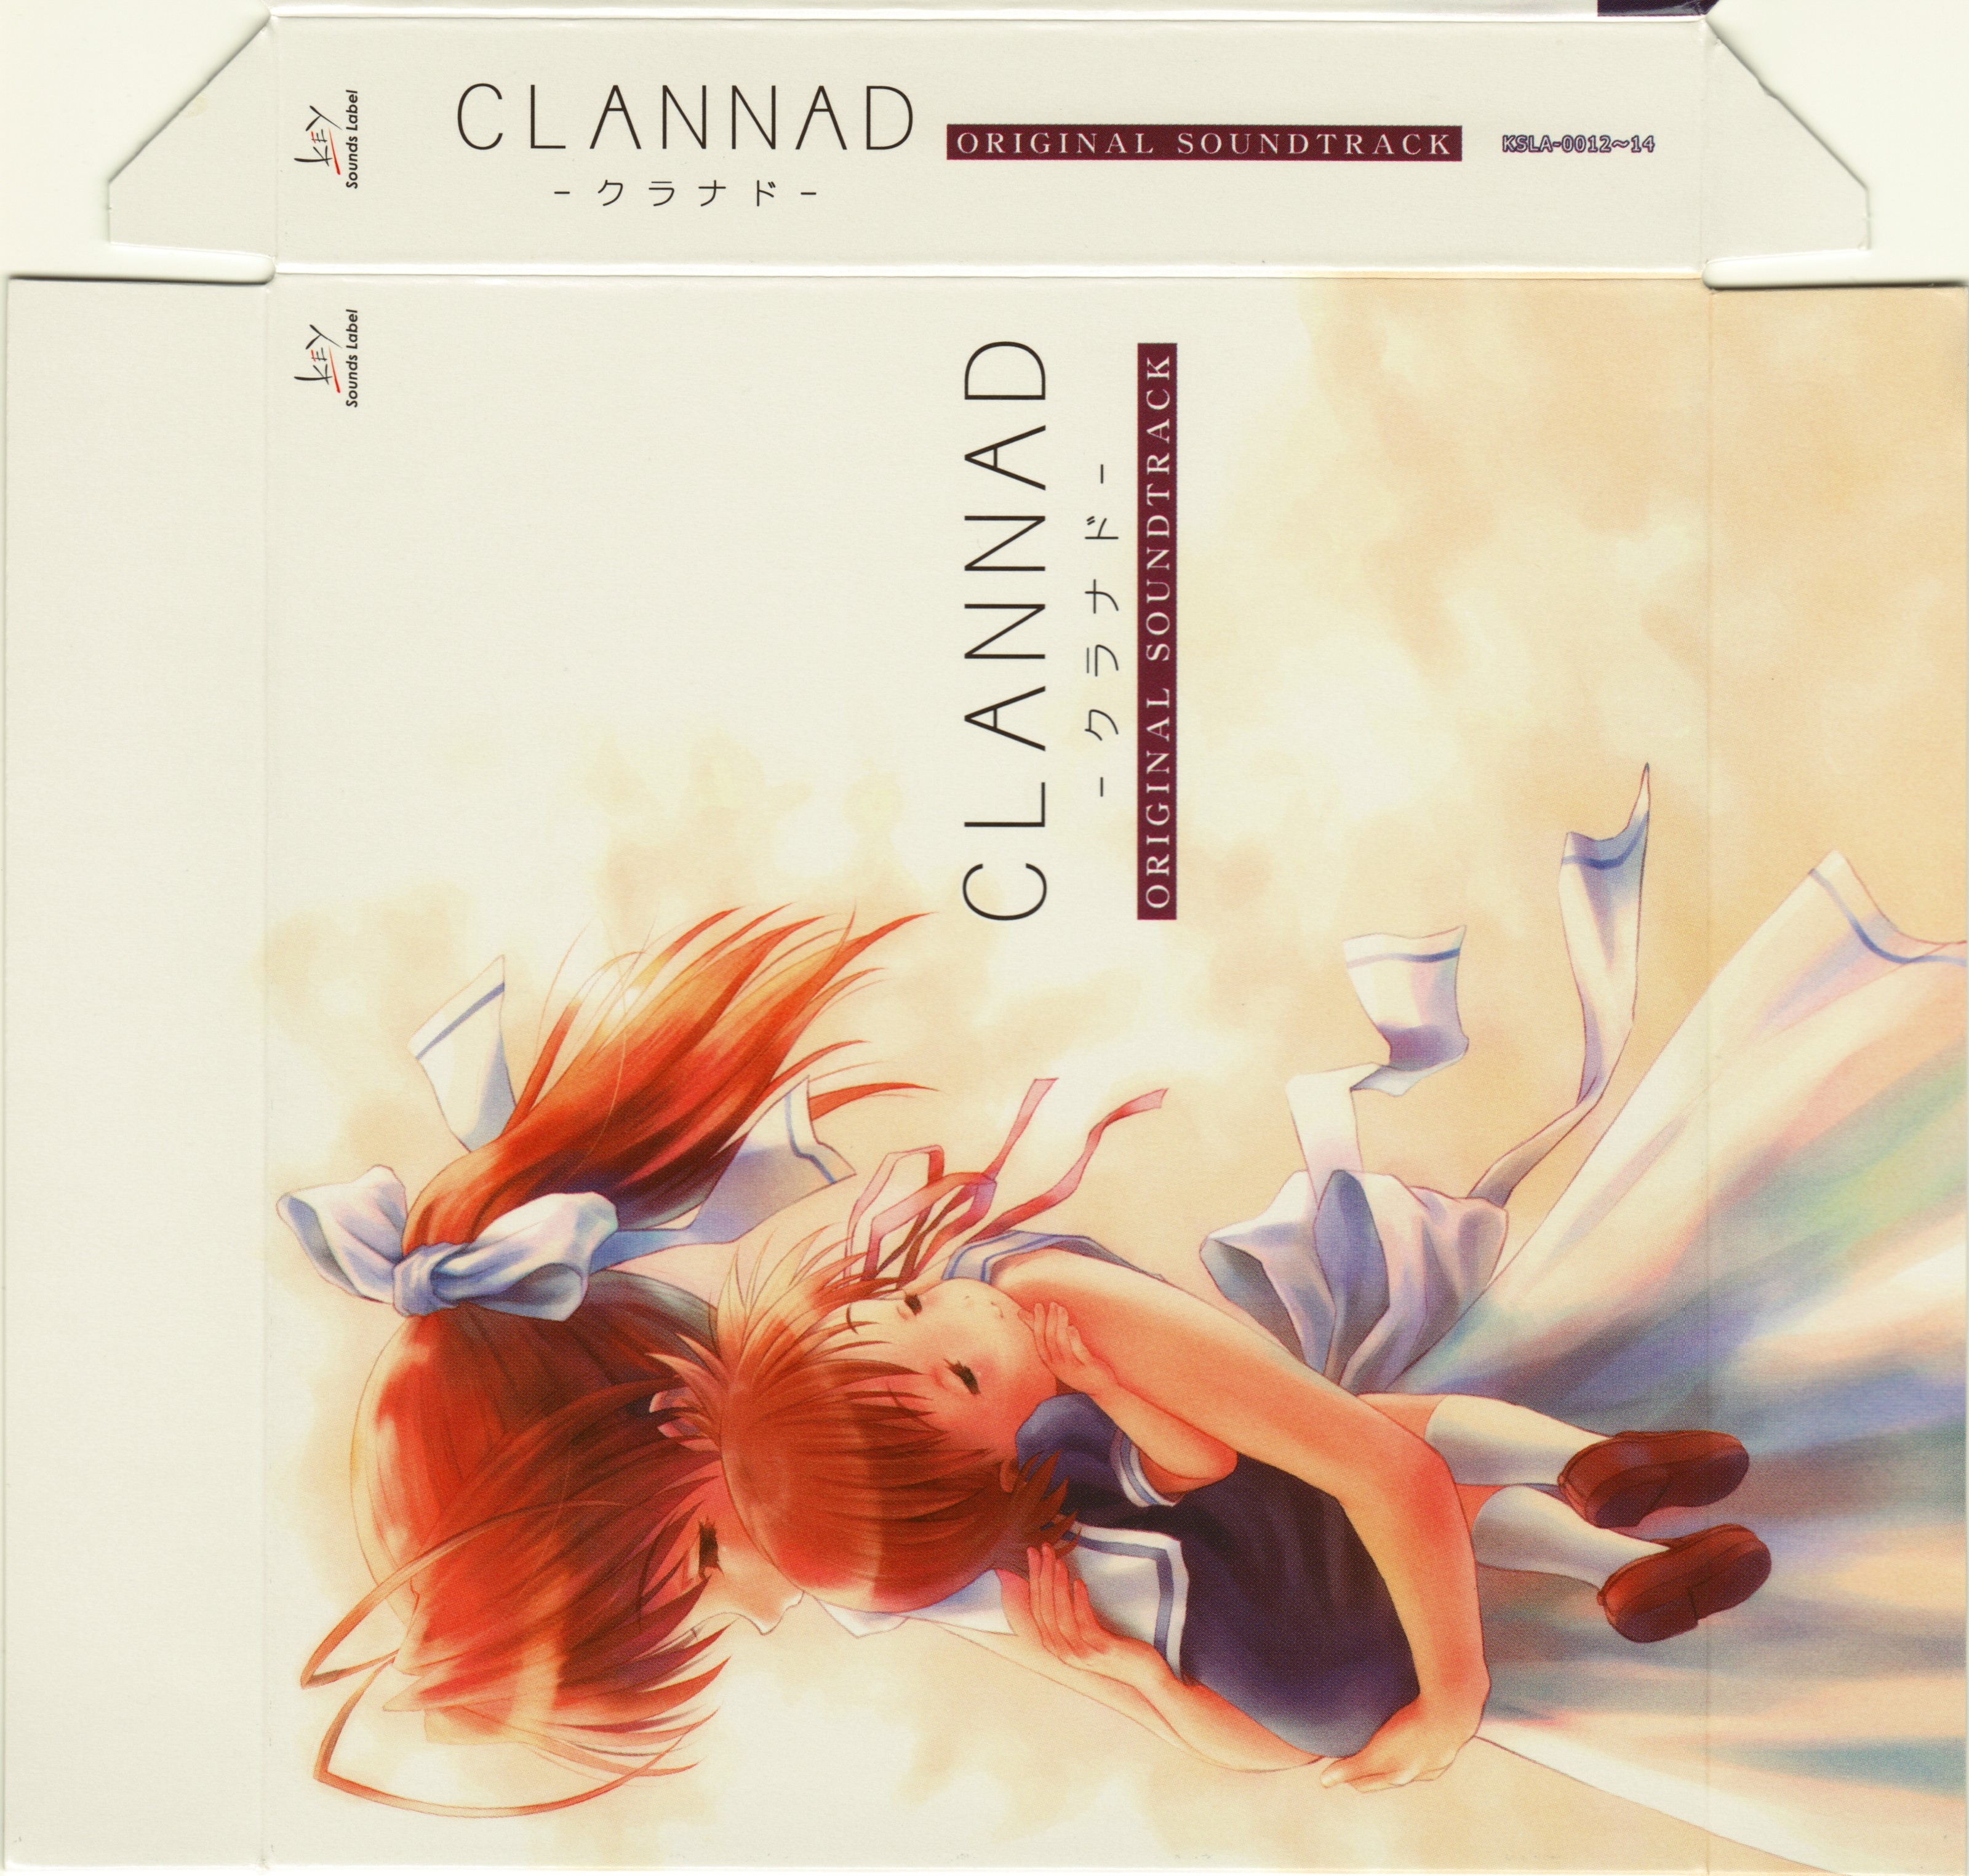 CLANNAD ORIGINAL SOUNDTRACK (2004) MP3 - Download CLANNAD ORIGINAL 